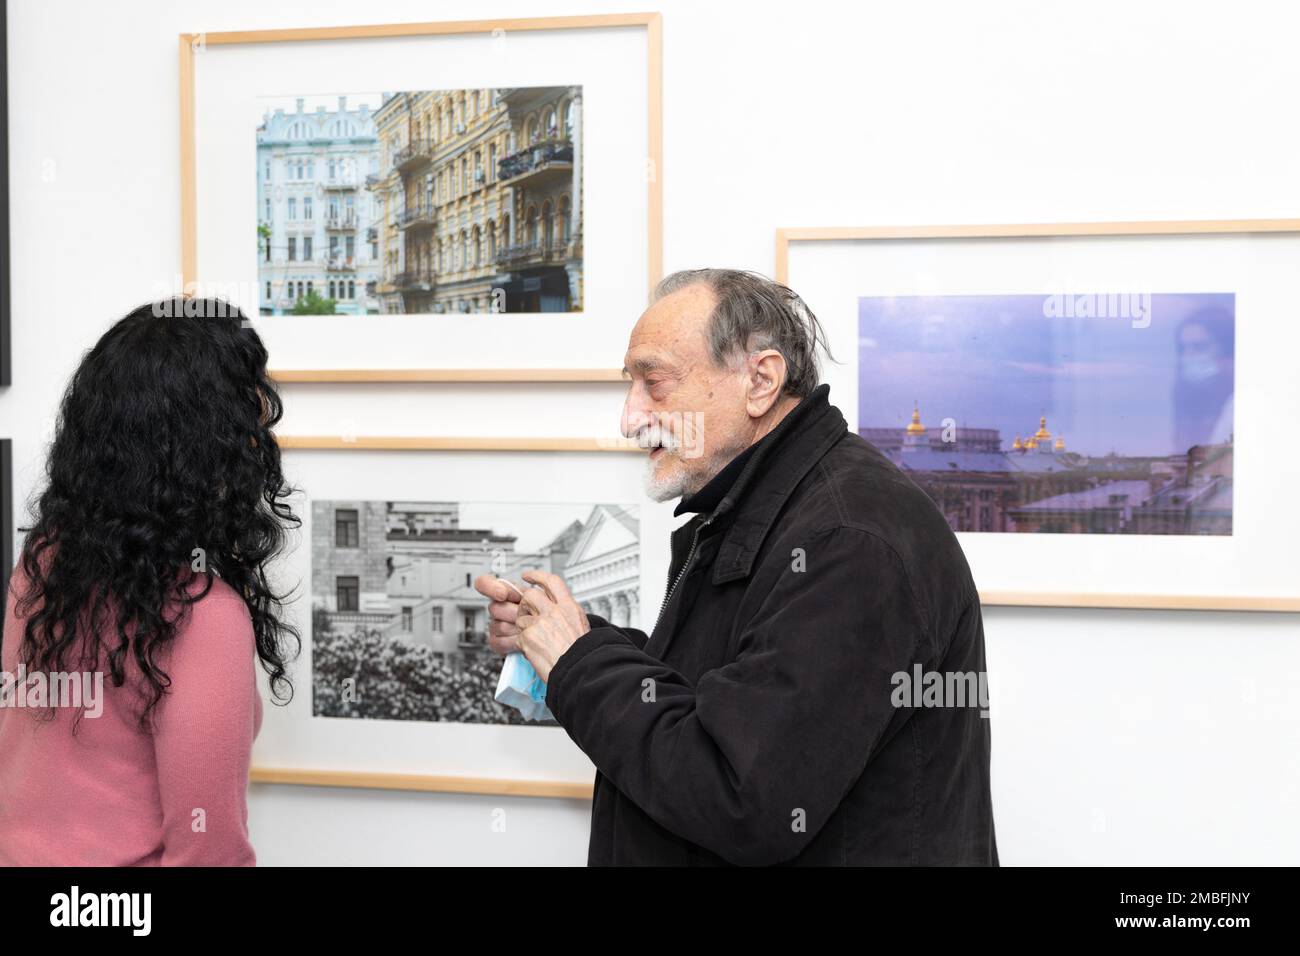 Exposition de photos Kyiv émergent à Kommunale Galerie Berlin, Allemagne. Le photographe ukrainien Boris Mikhaïlov s'est exprimé avec l'un des participants. Banque D'Images